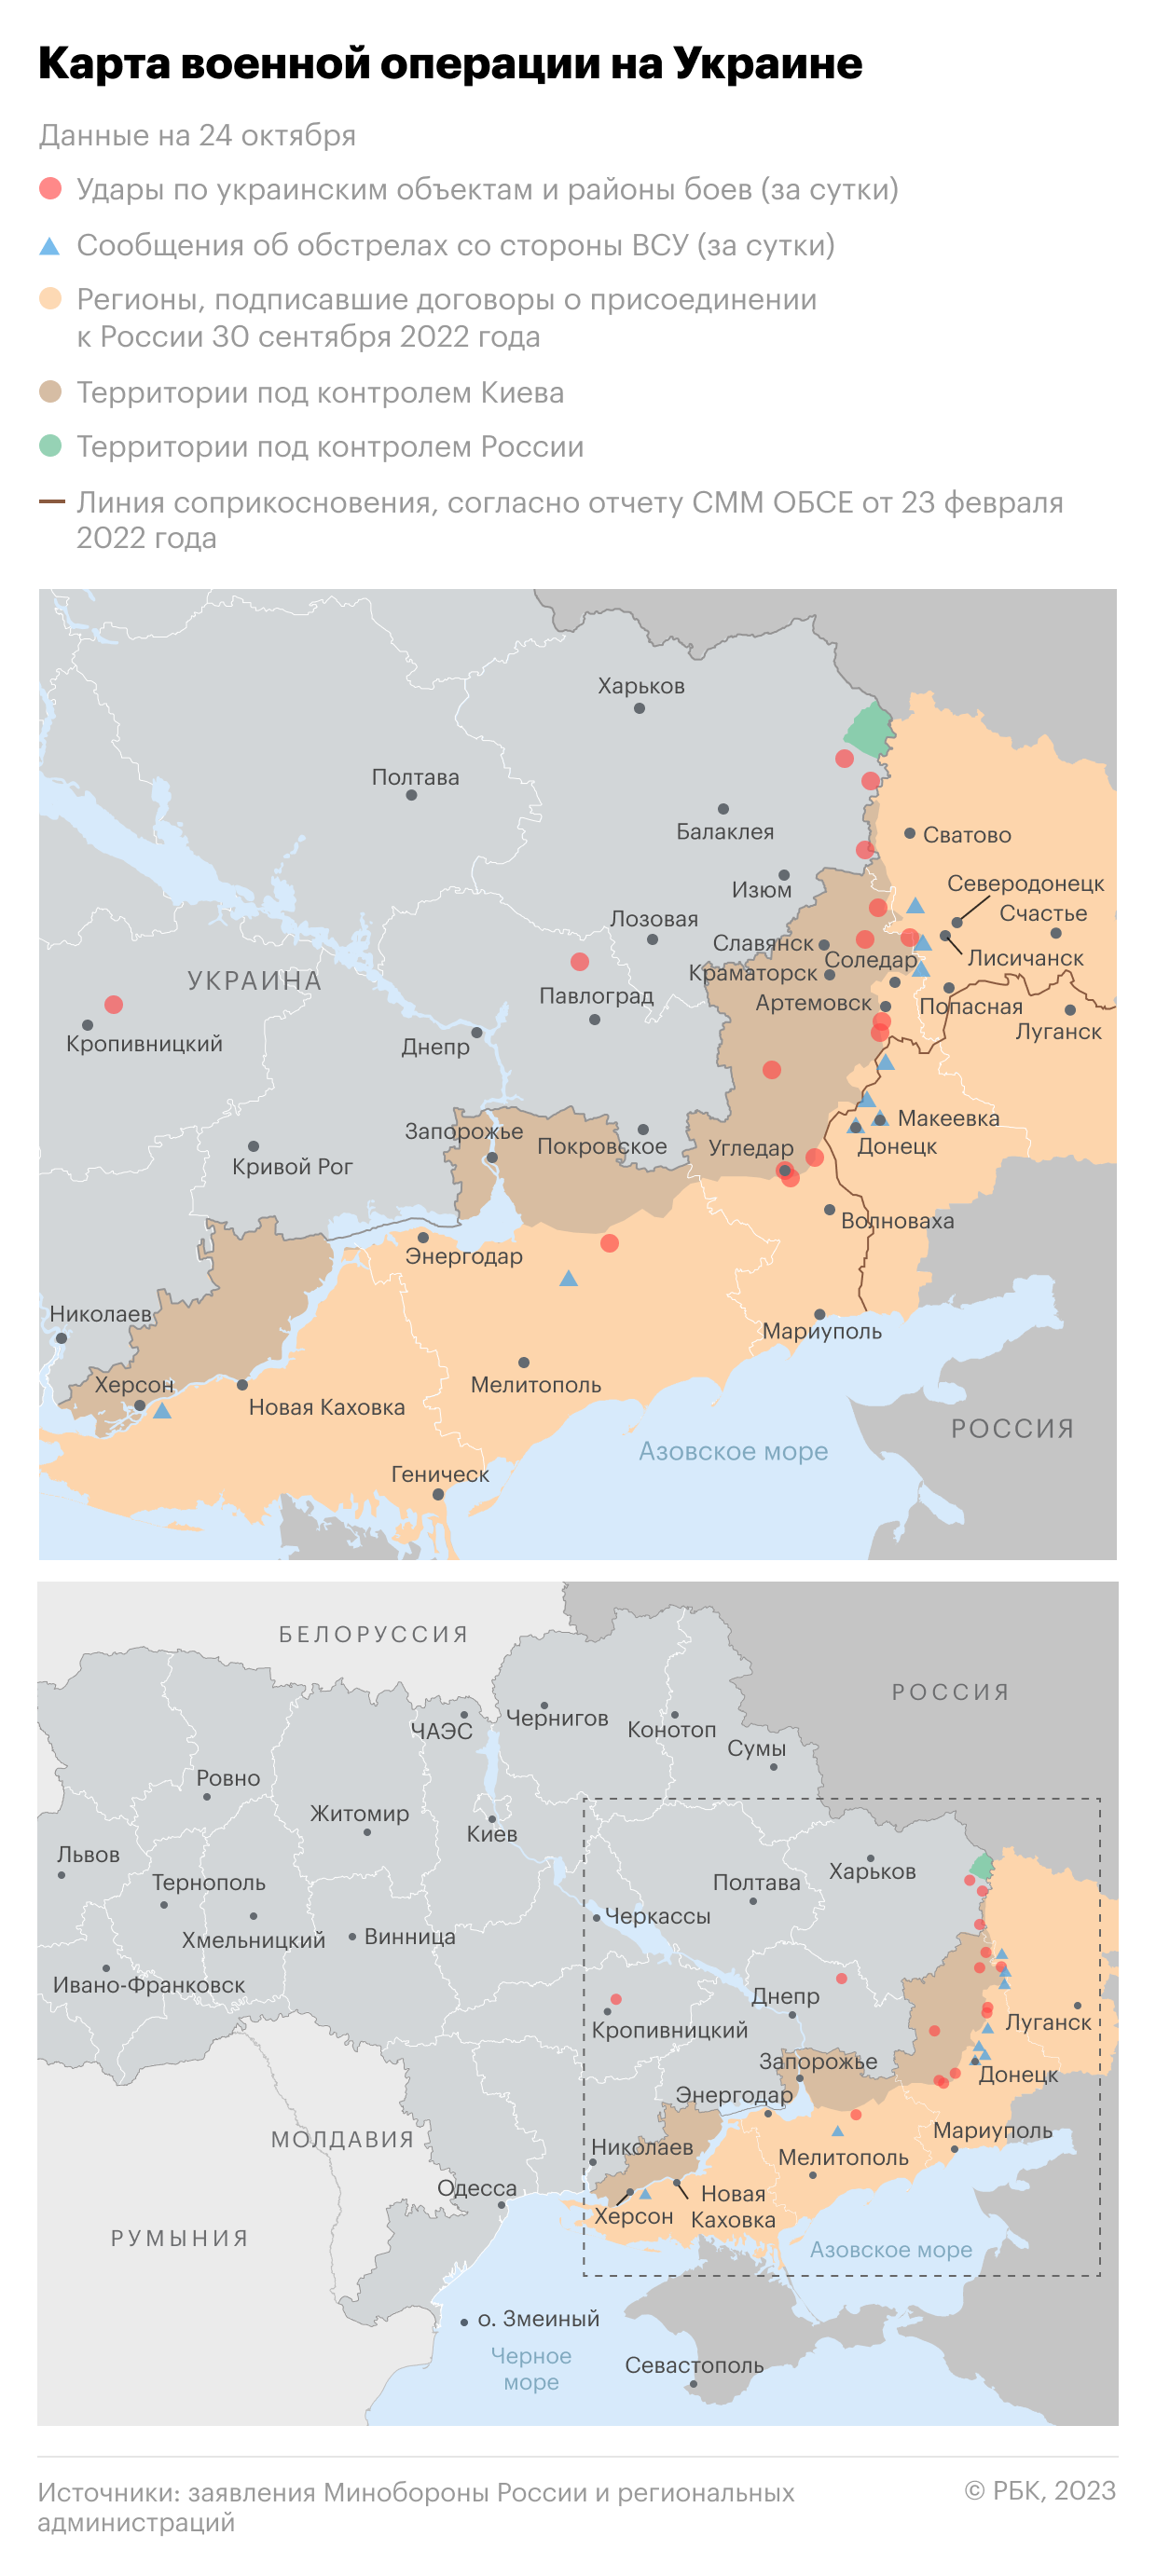 Военная операция на Украине. Карта на 24 октября